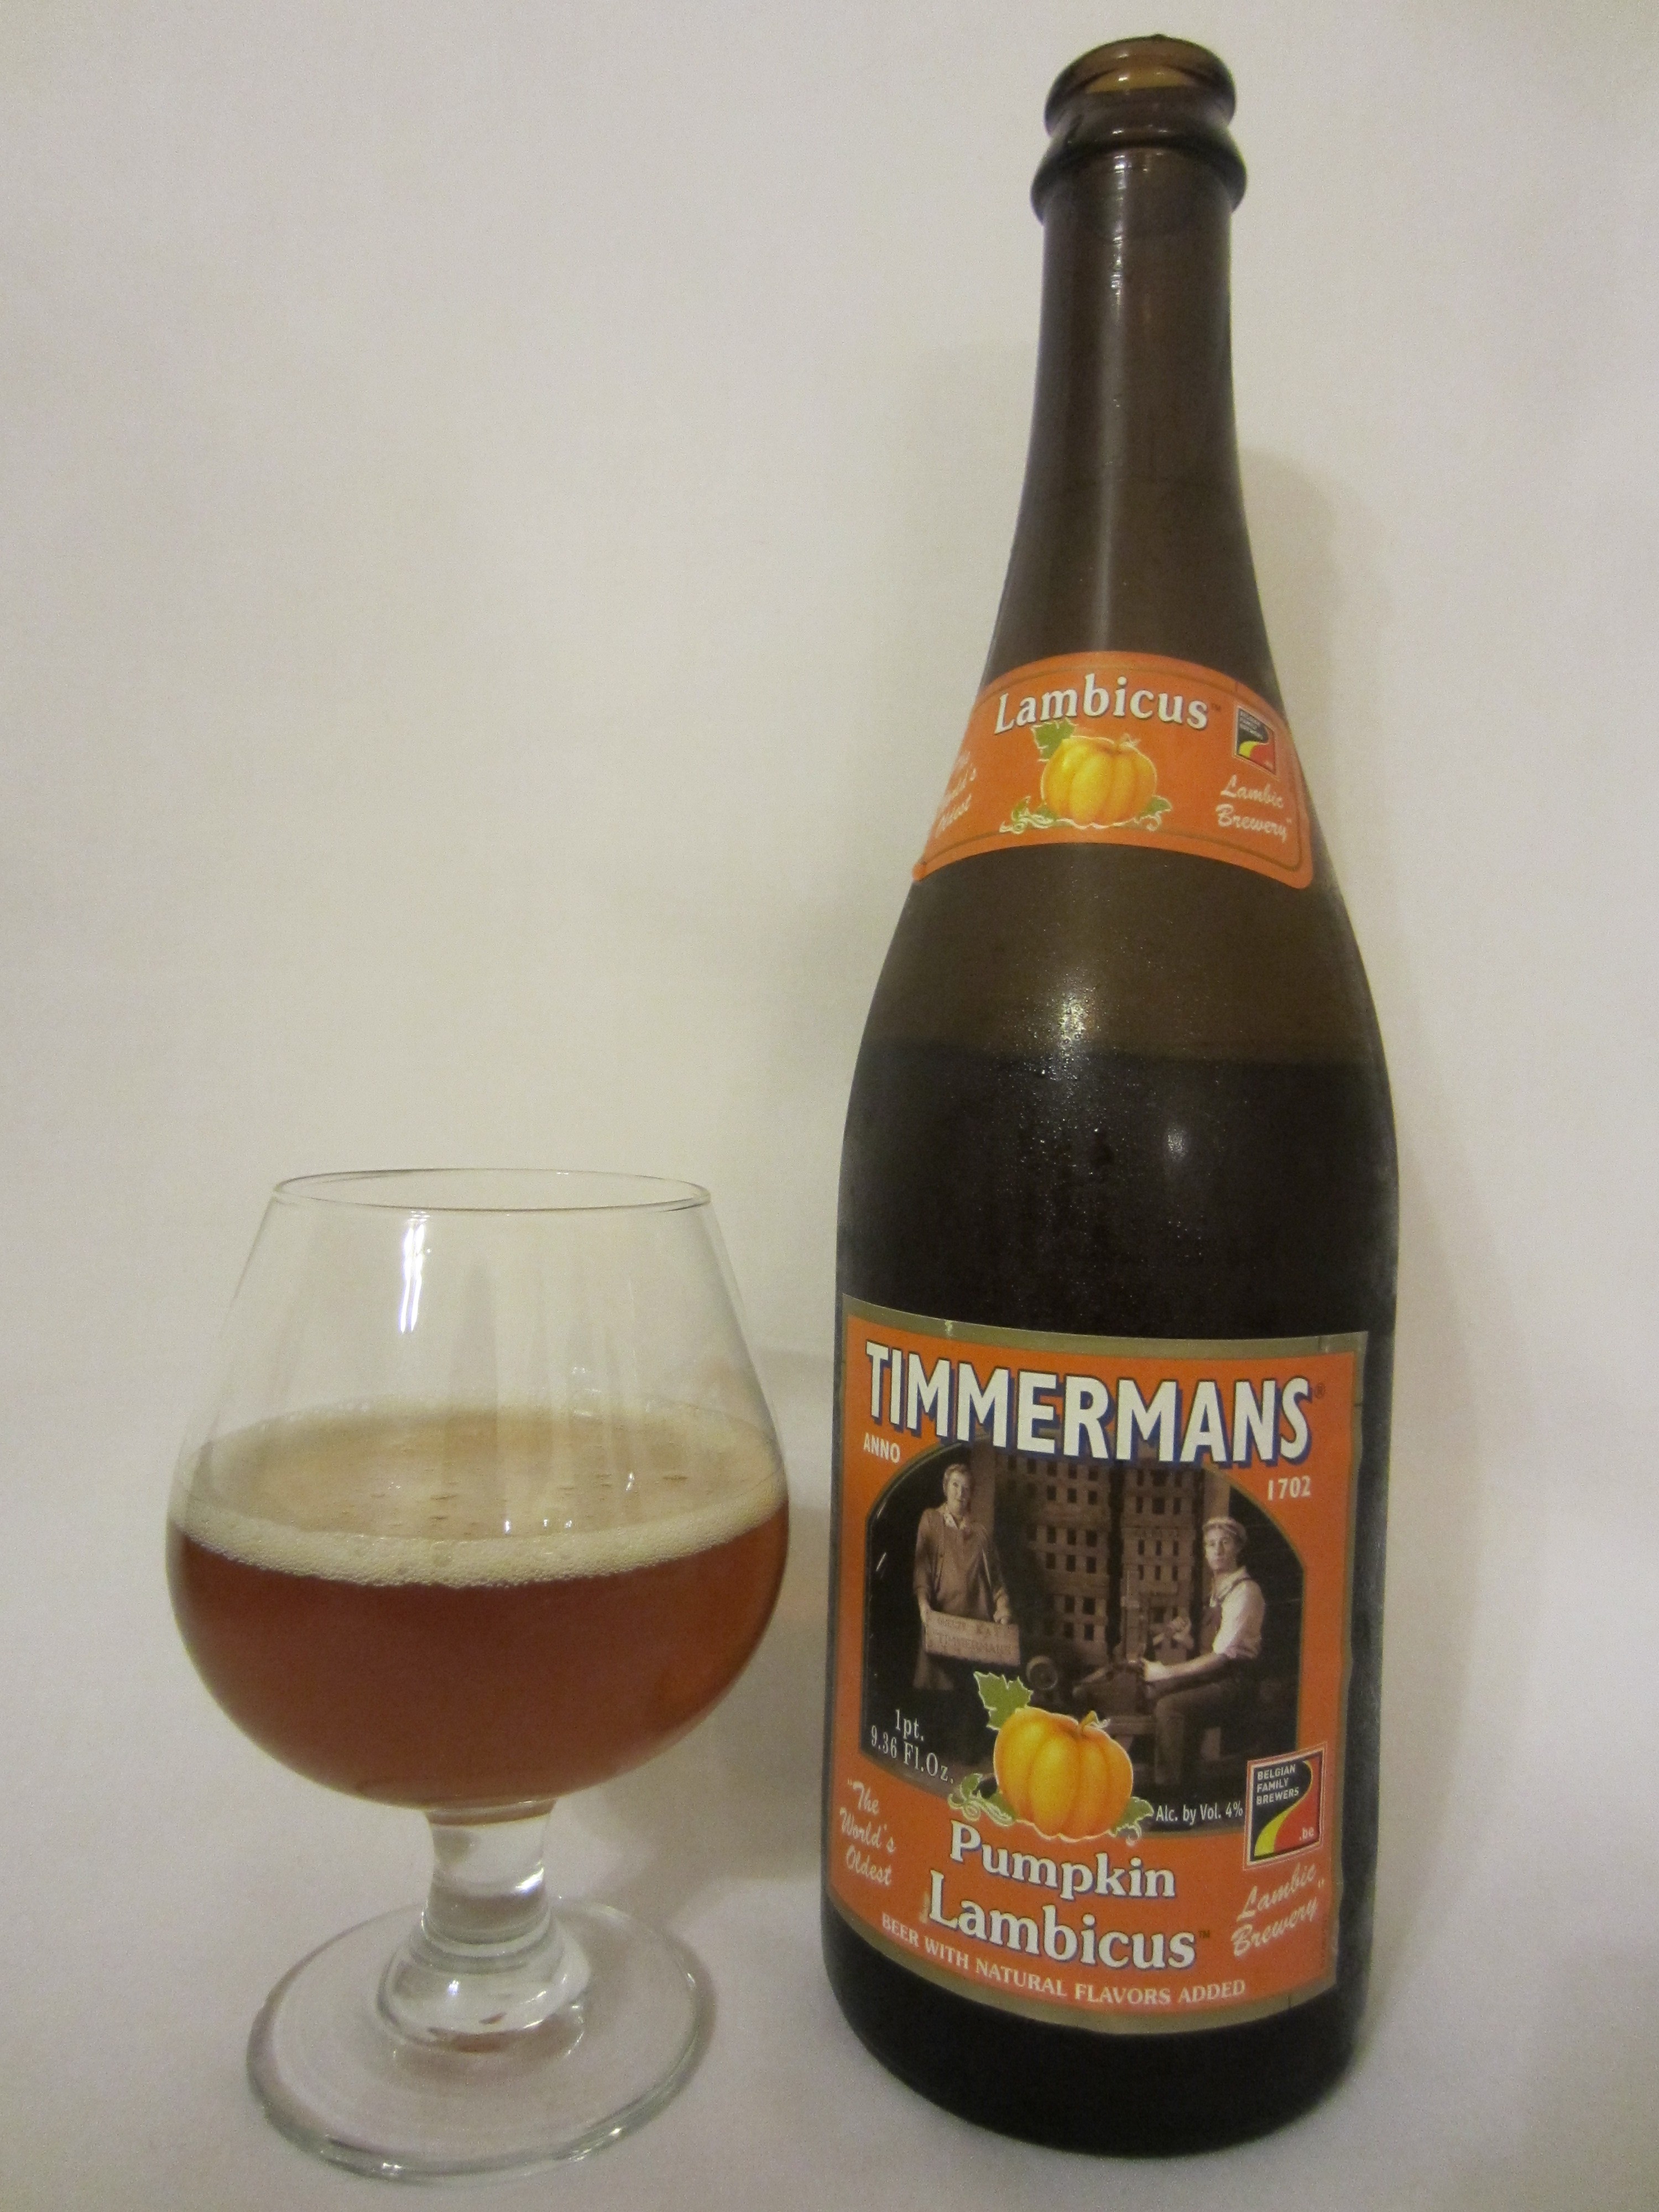 Timmermans Pumpkin Lambicus - Brouweij Timmermans